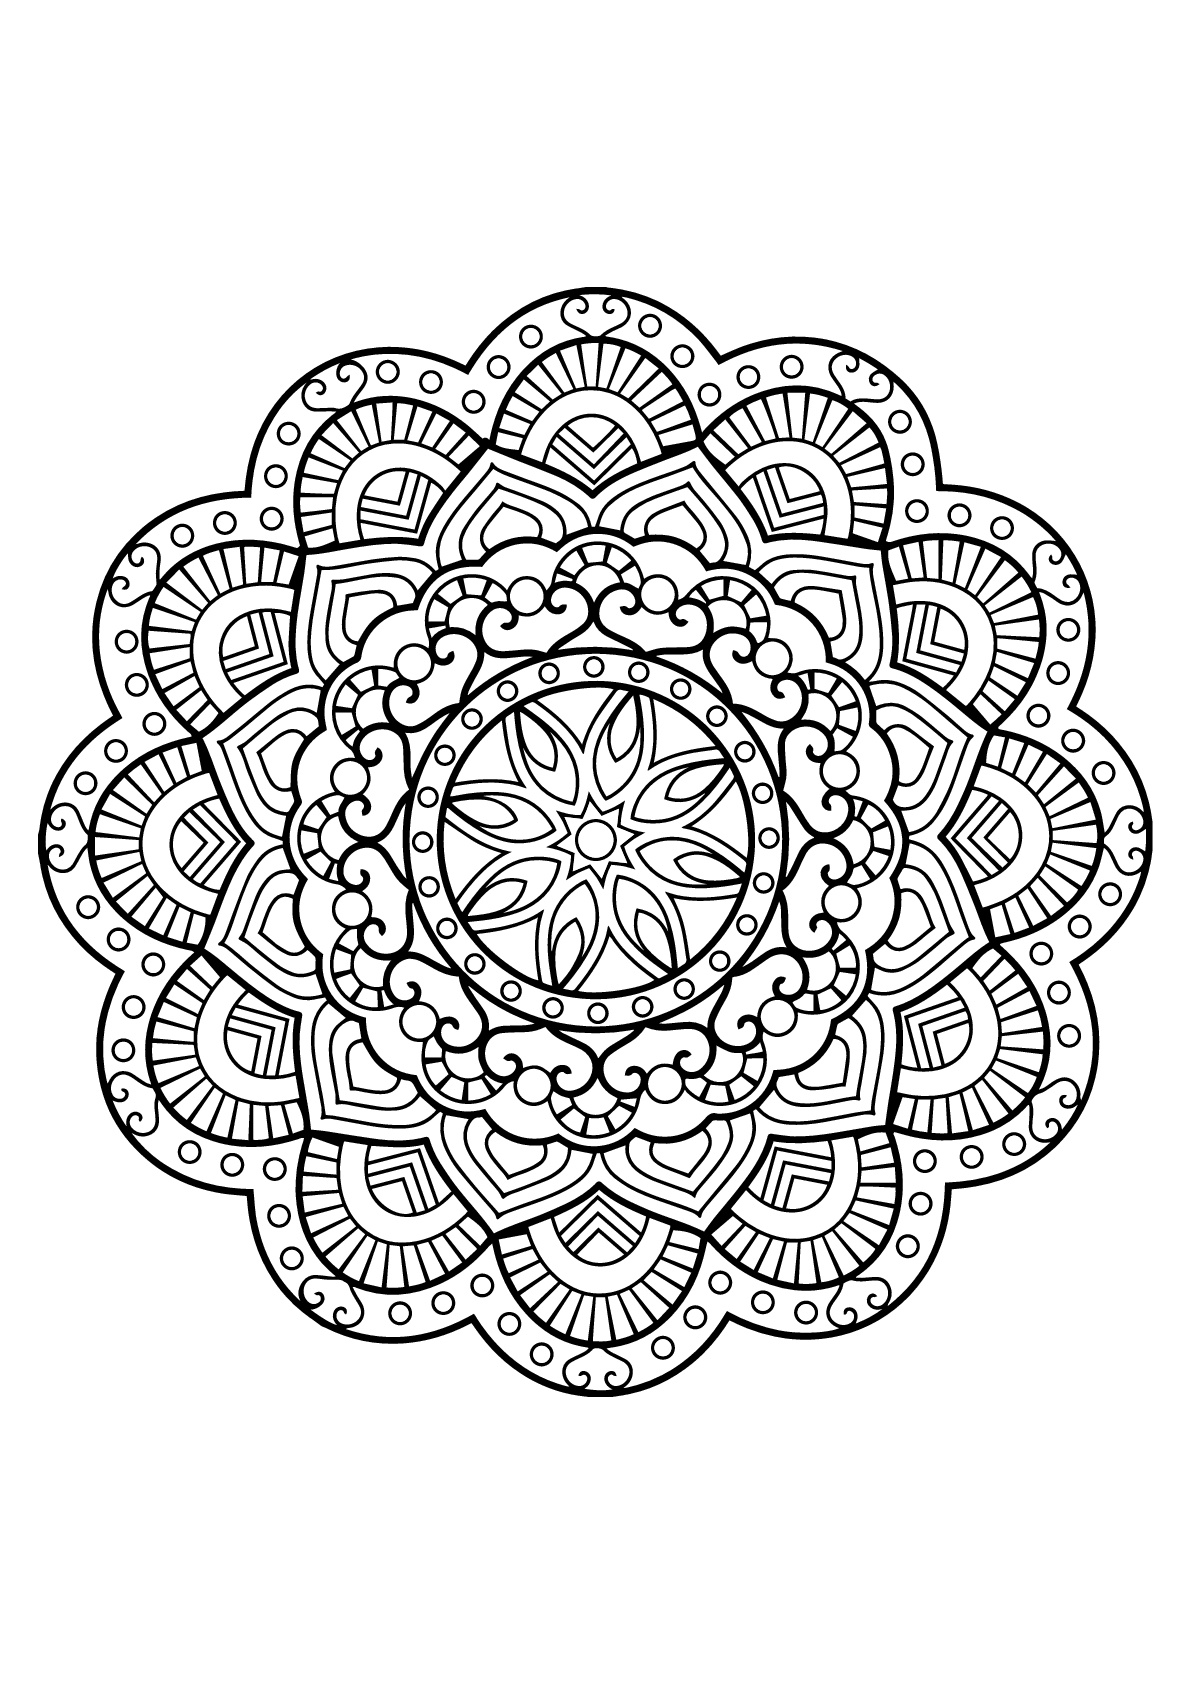 Mandala complexe tiré d'un livre de coloriages gratuit